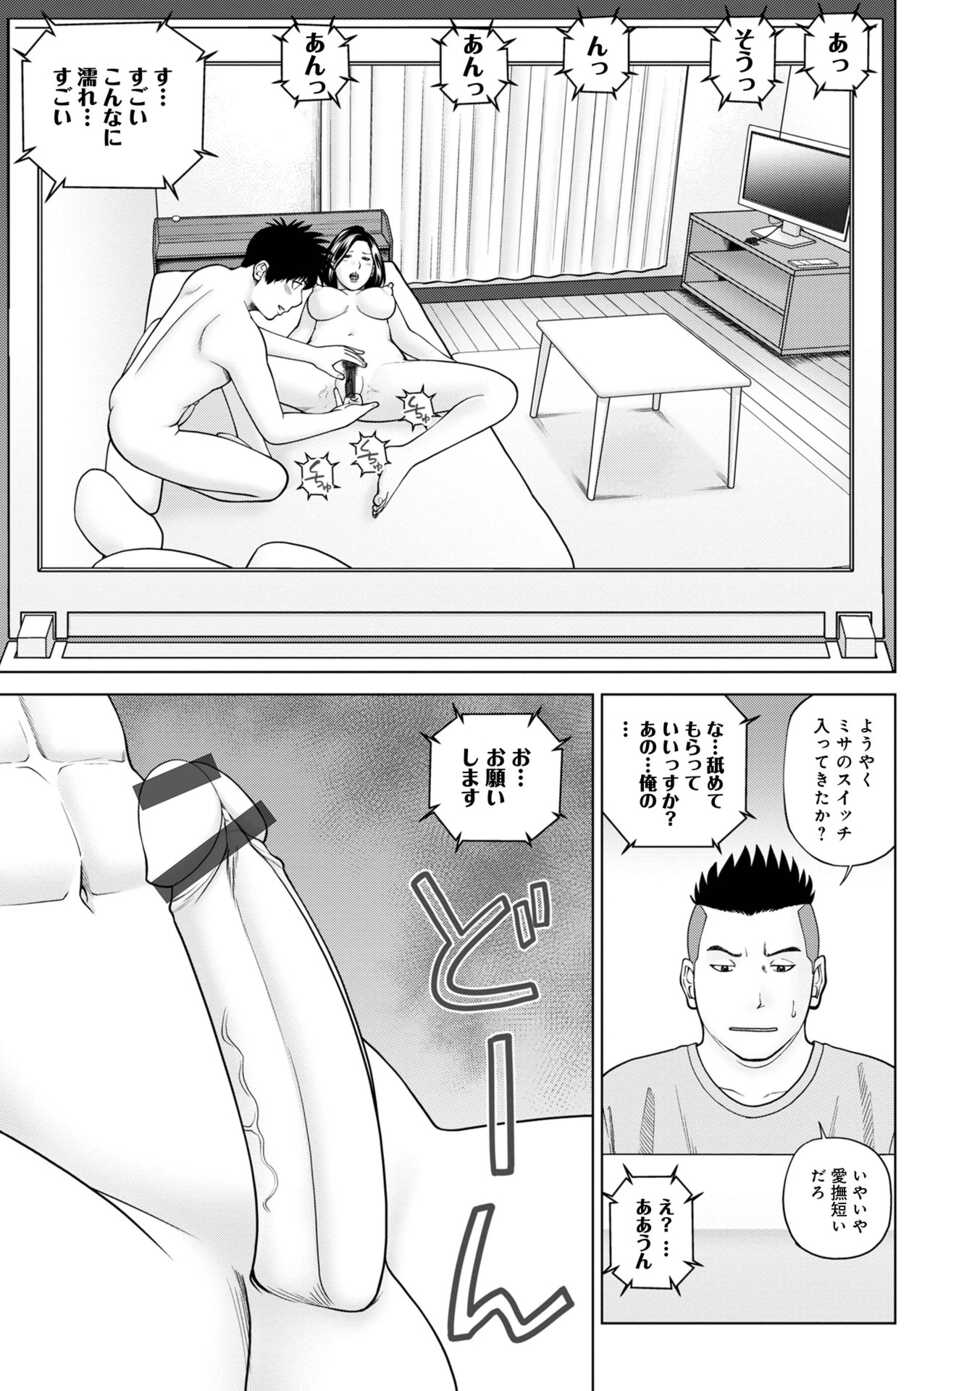 [Anthology] WEB Ban COMIC Gekiyaba! Vol. 155 - Page 13